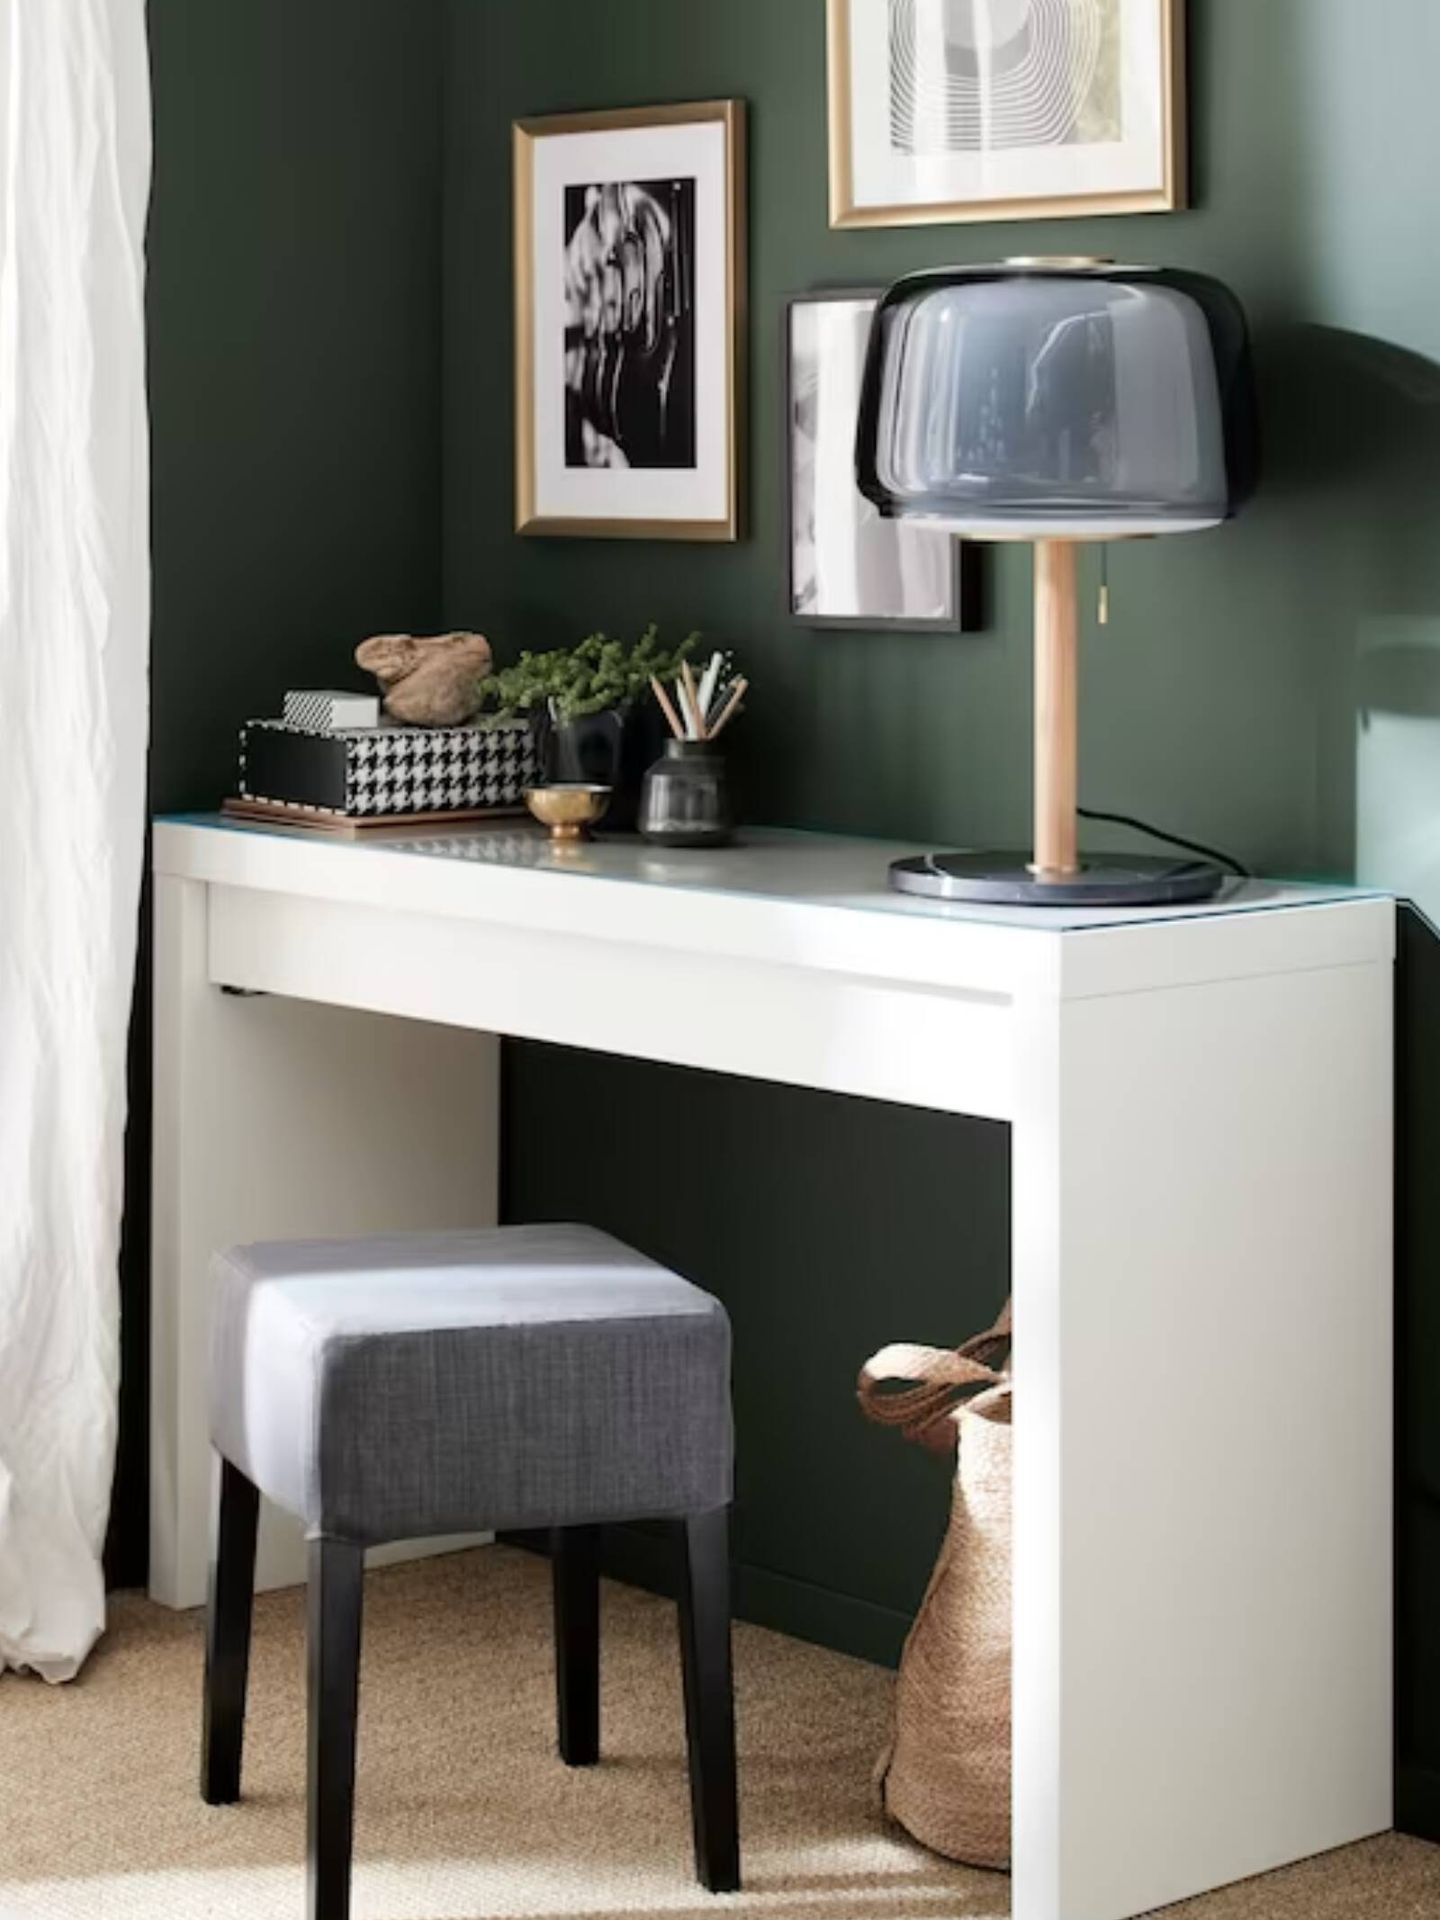 Compras: muebles prácticos y estilosos para recibidores pequeños